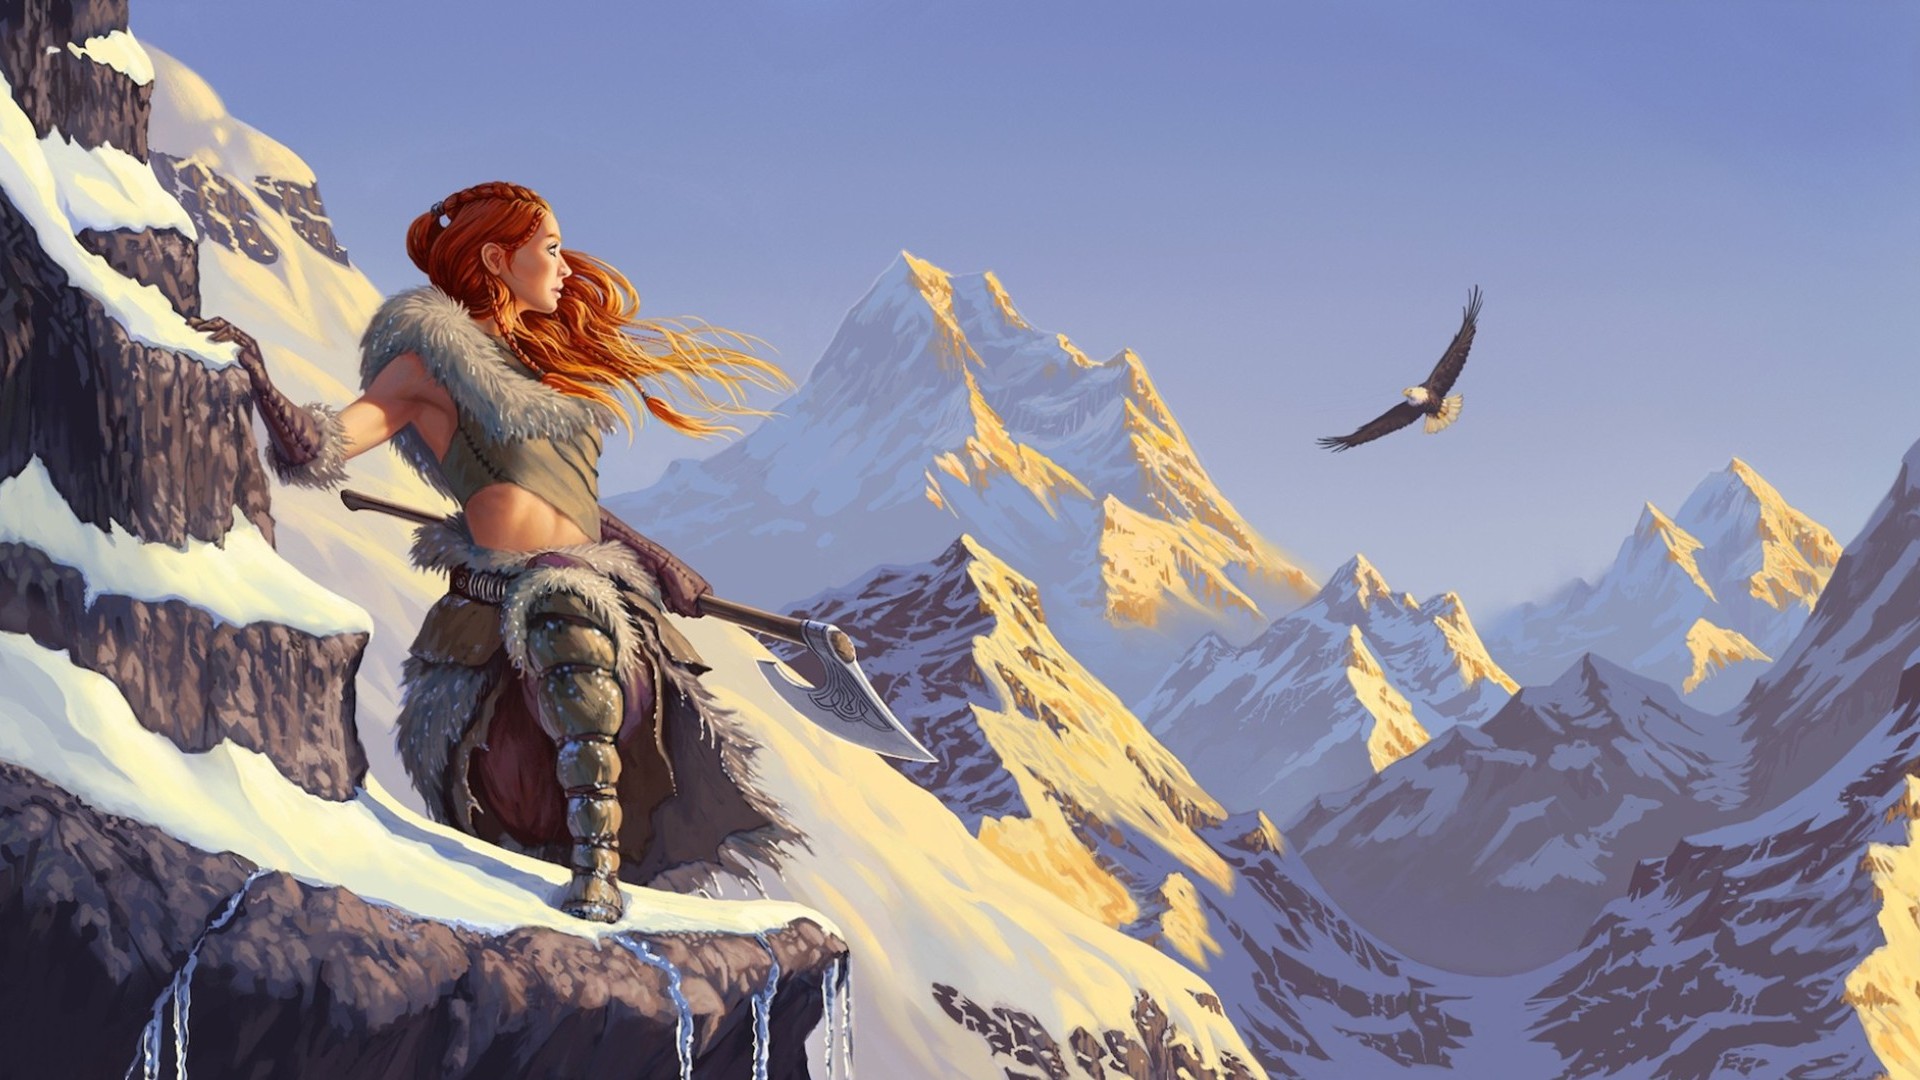 women warrior, fantasy, axe, eagle, flight, mountain Desktop home screen Wallpaper